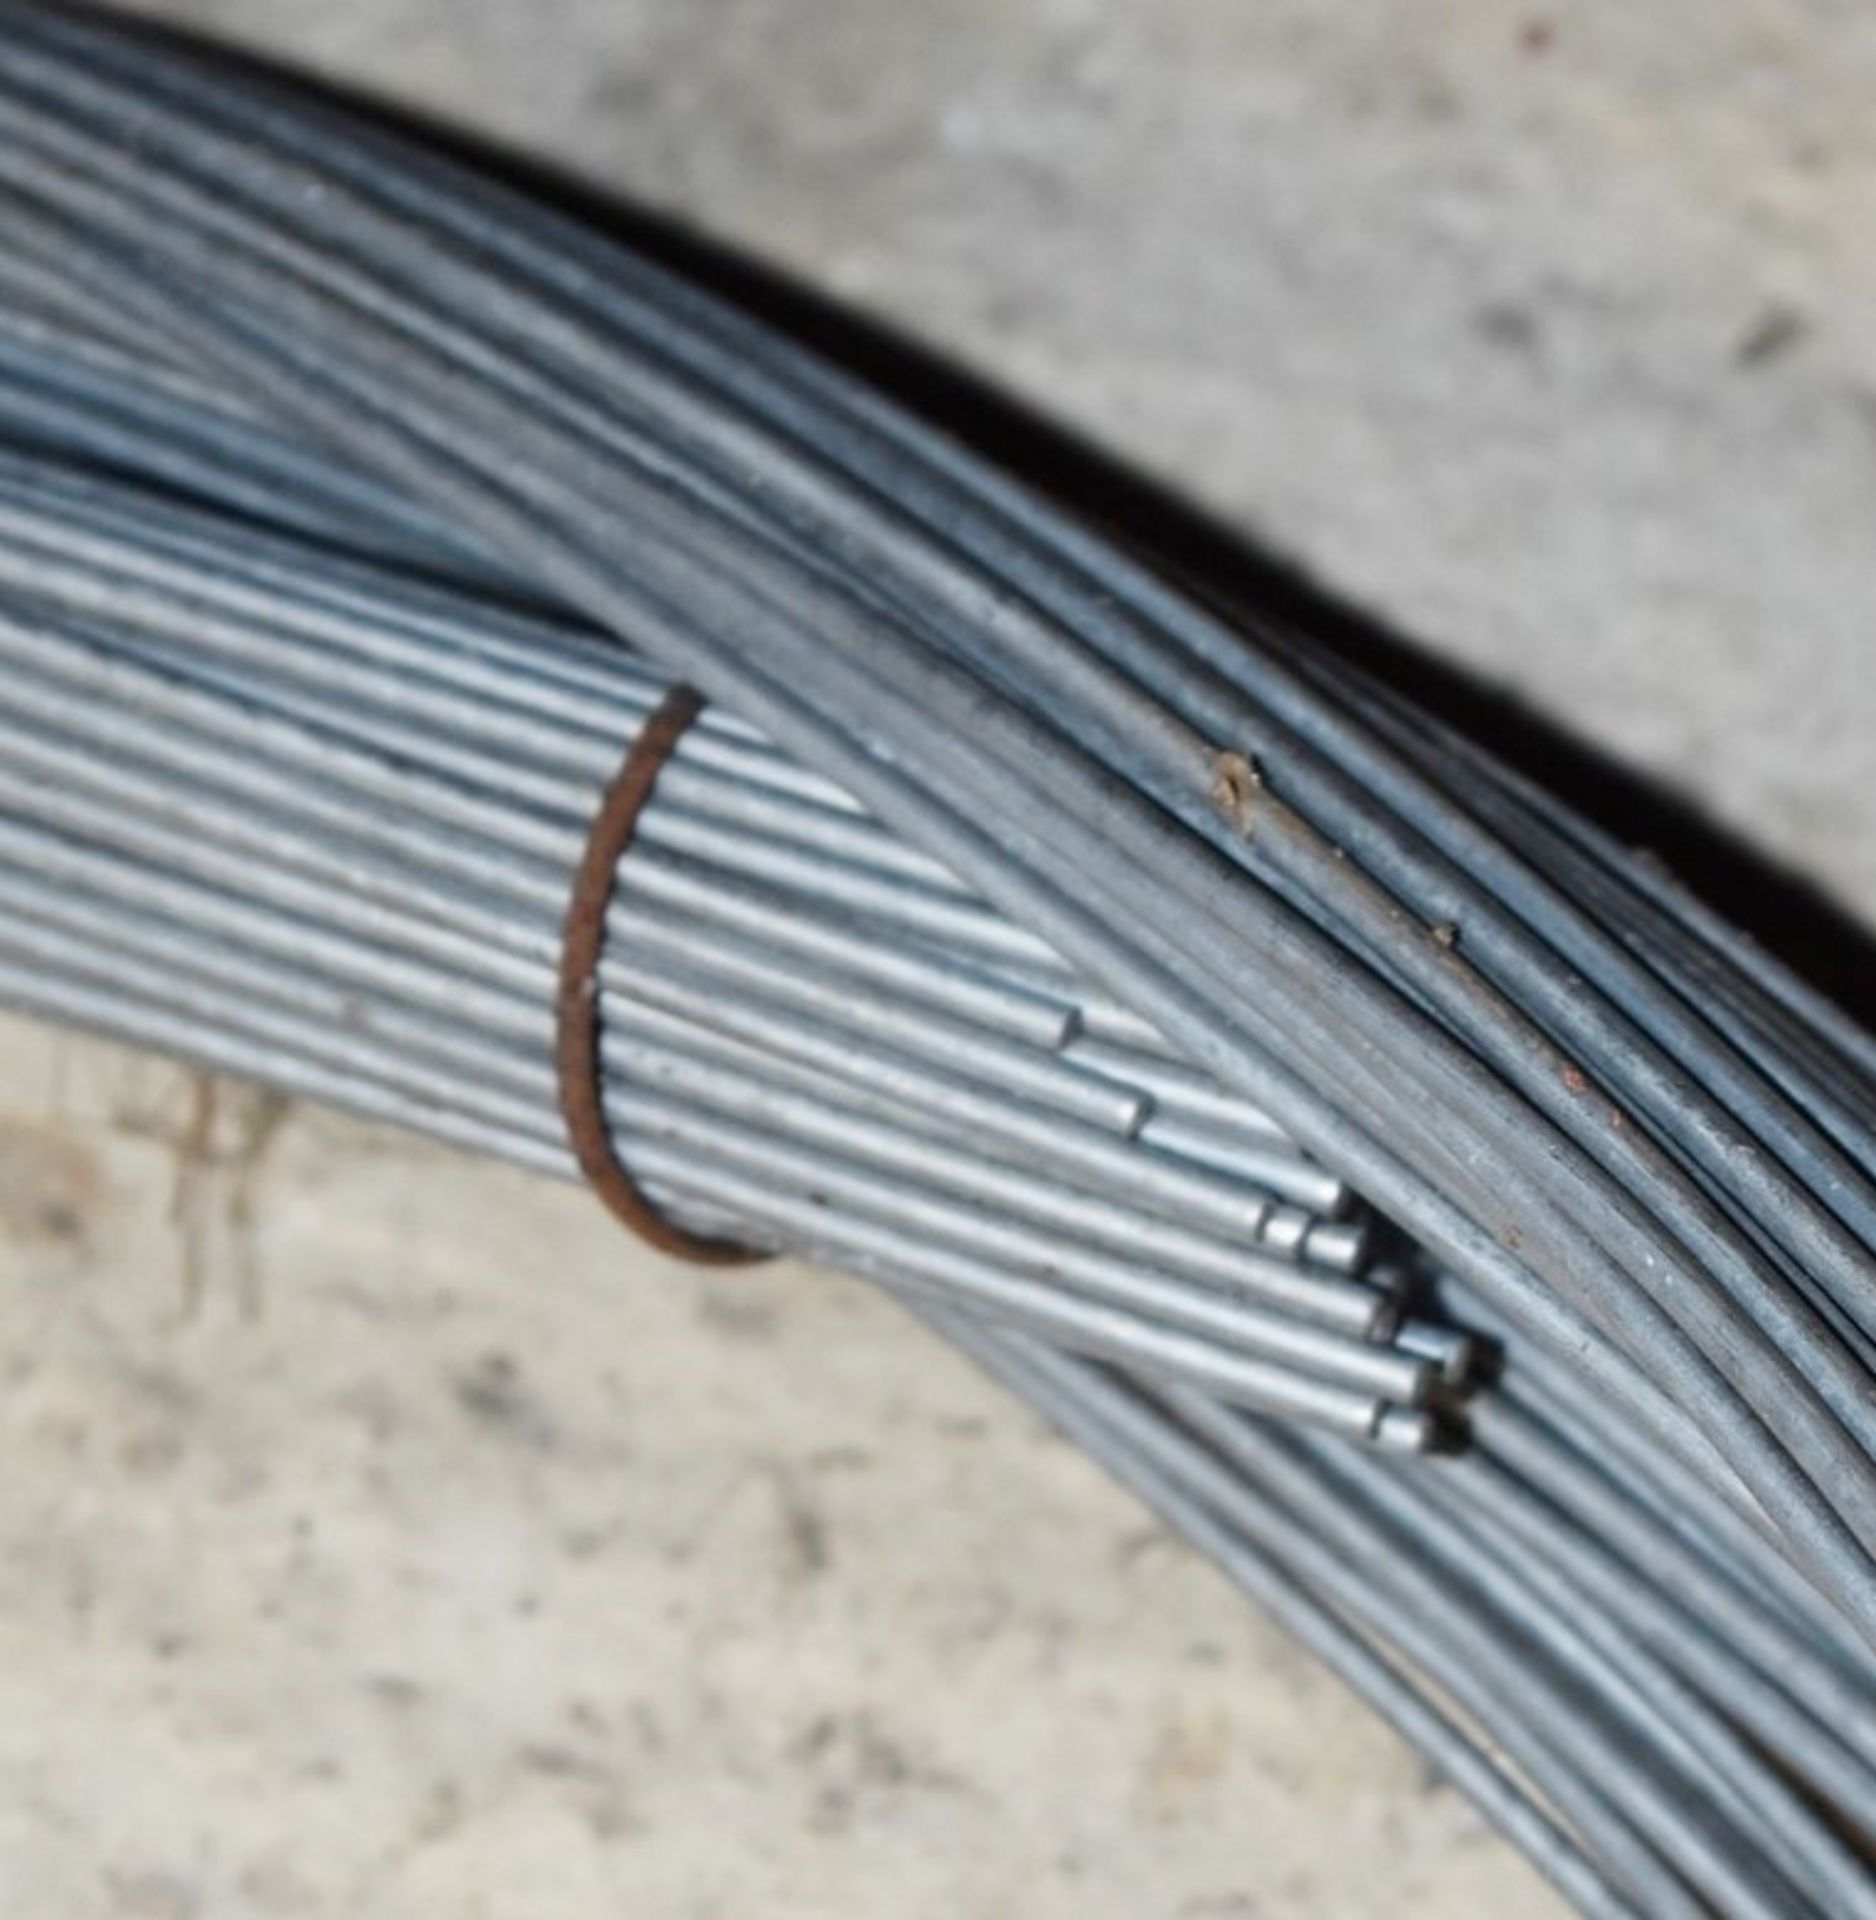 2 x Bundles of Steel Cable With Loop Ends - Unused Bundles - Ref VM129 - Bundle Diameter 80 cms - - Image 4 of 4